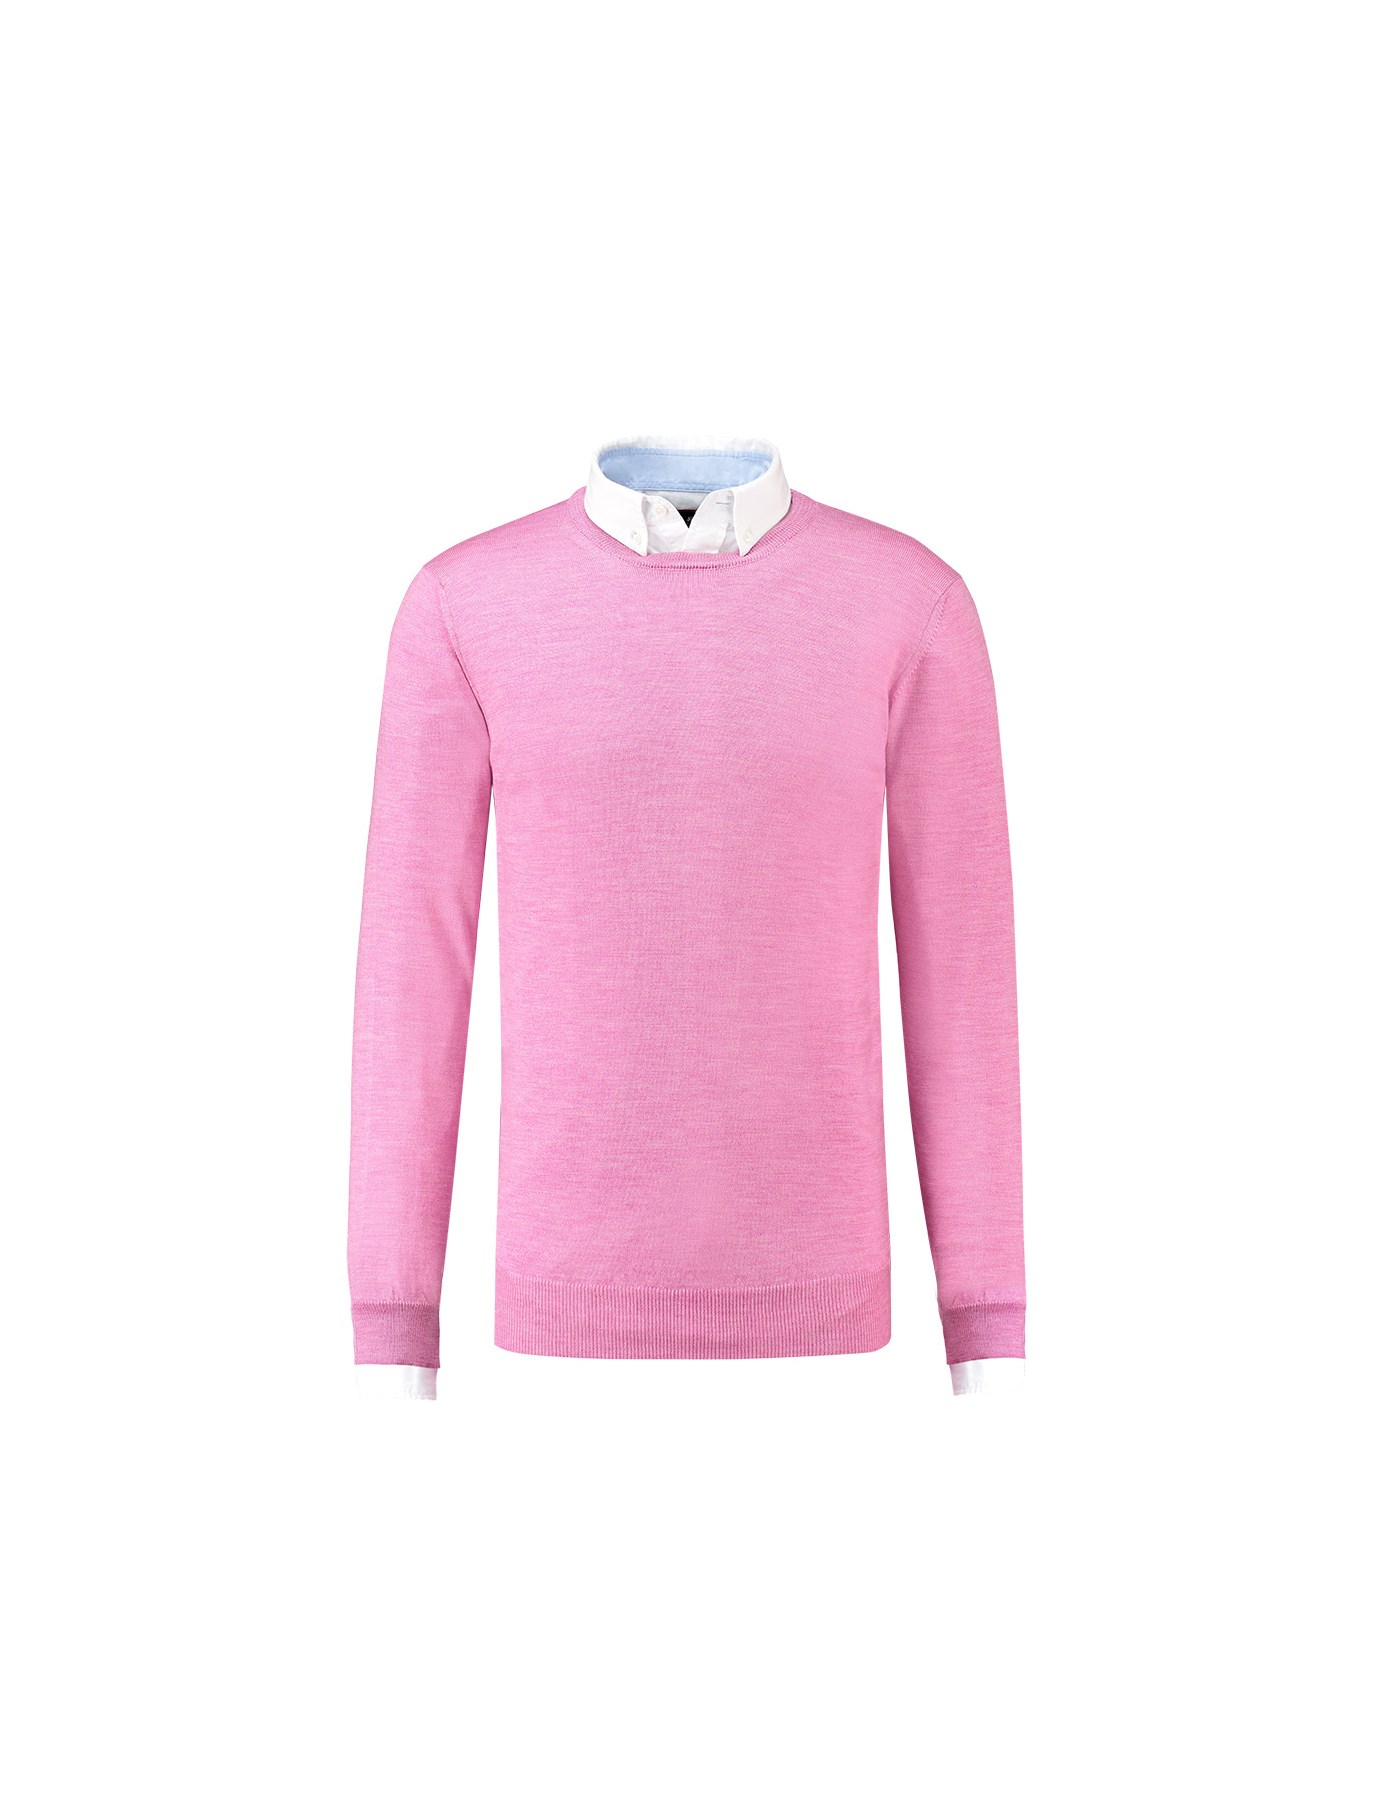 Men's Pink Slim Fit Round Neck Merino Wool Sweater Hawes & Curtis